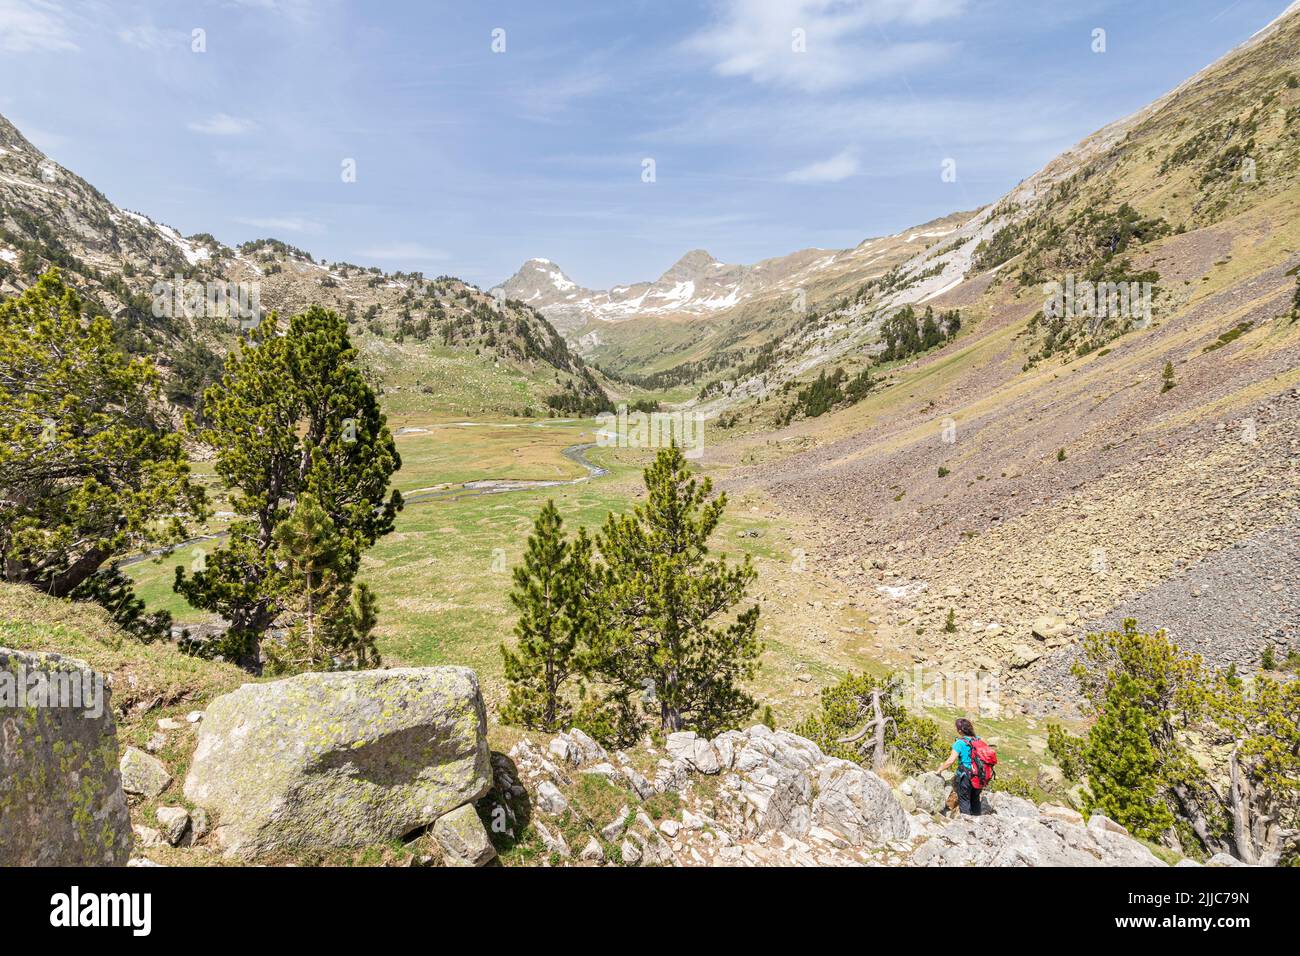 Plan de Aiguallut, Valle de Benasque, Natural Park of Posets-Maladeta, Huesca, Spain Stock Photo